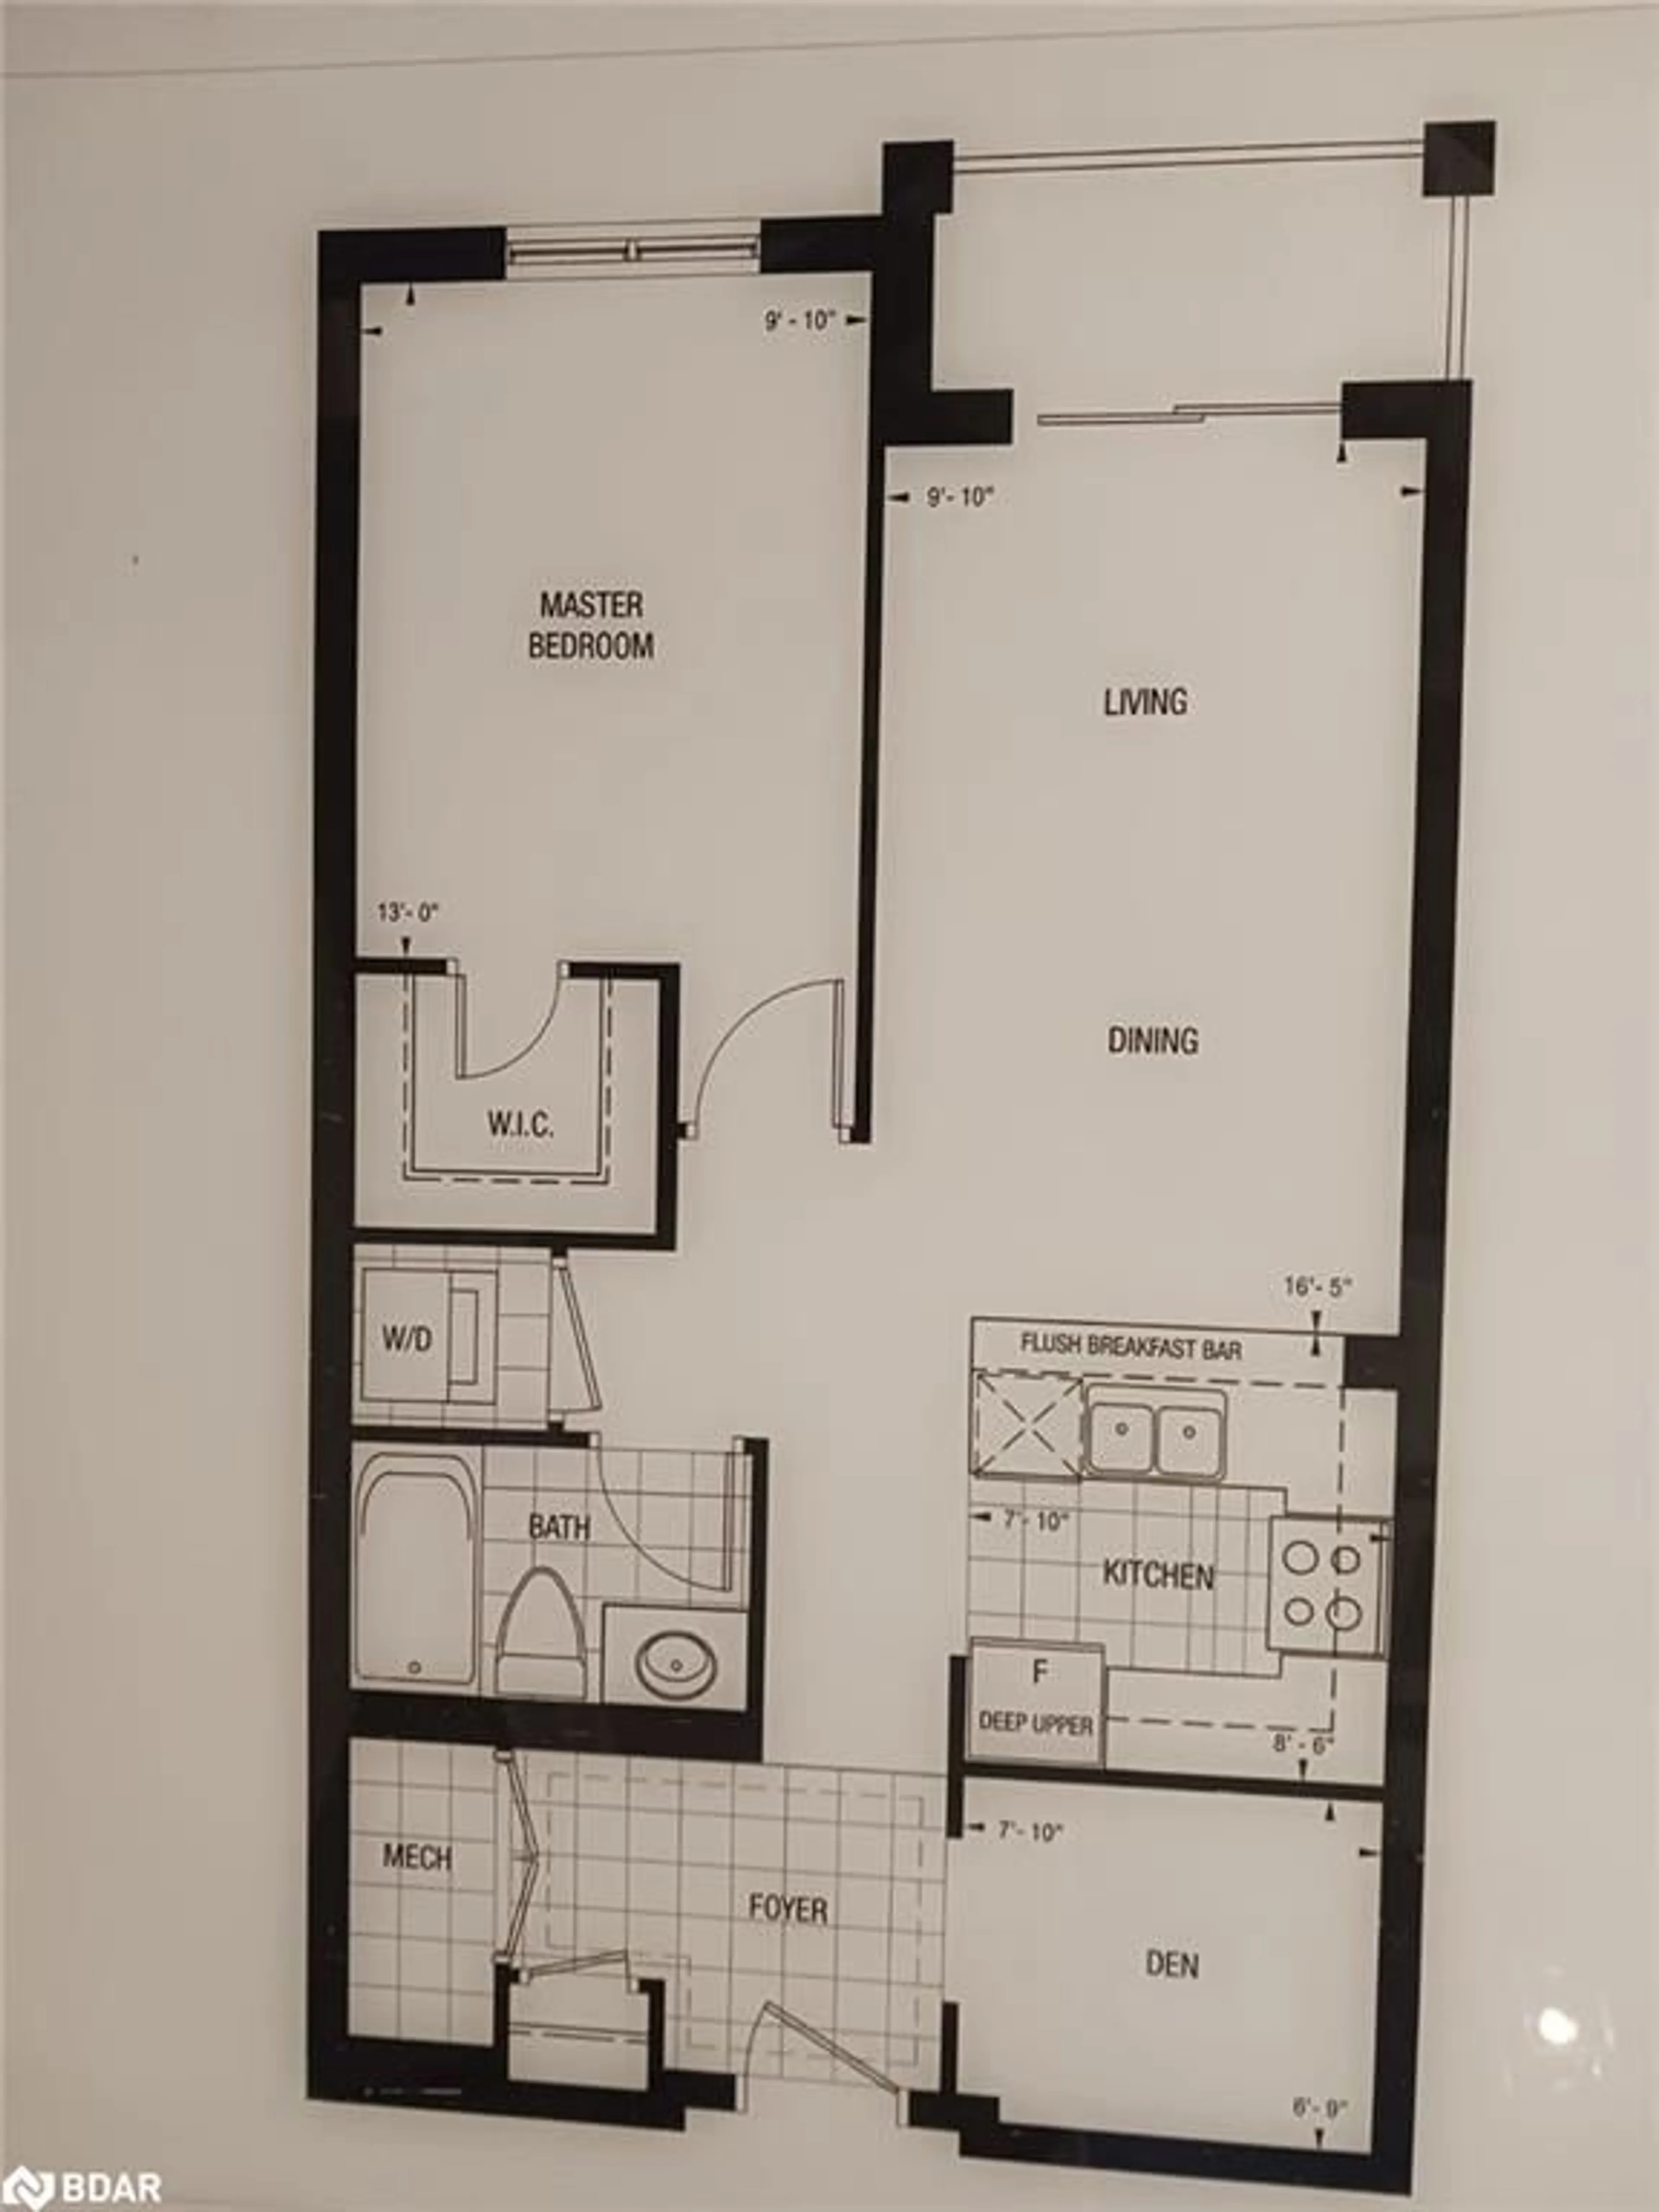 Floor plan for 2300 Upper Middle Rd #101, Oakville Ontario L6M 0T4